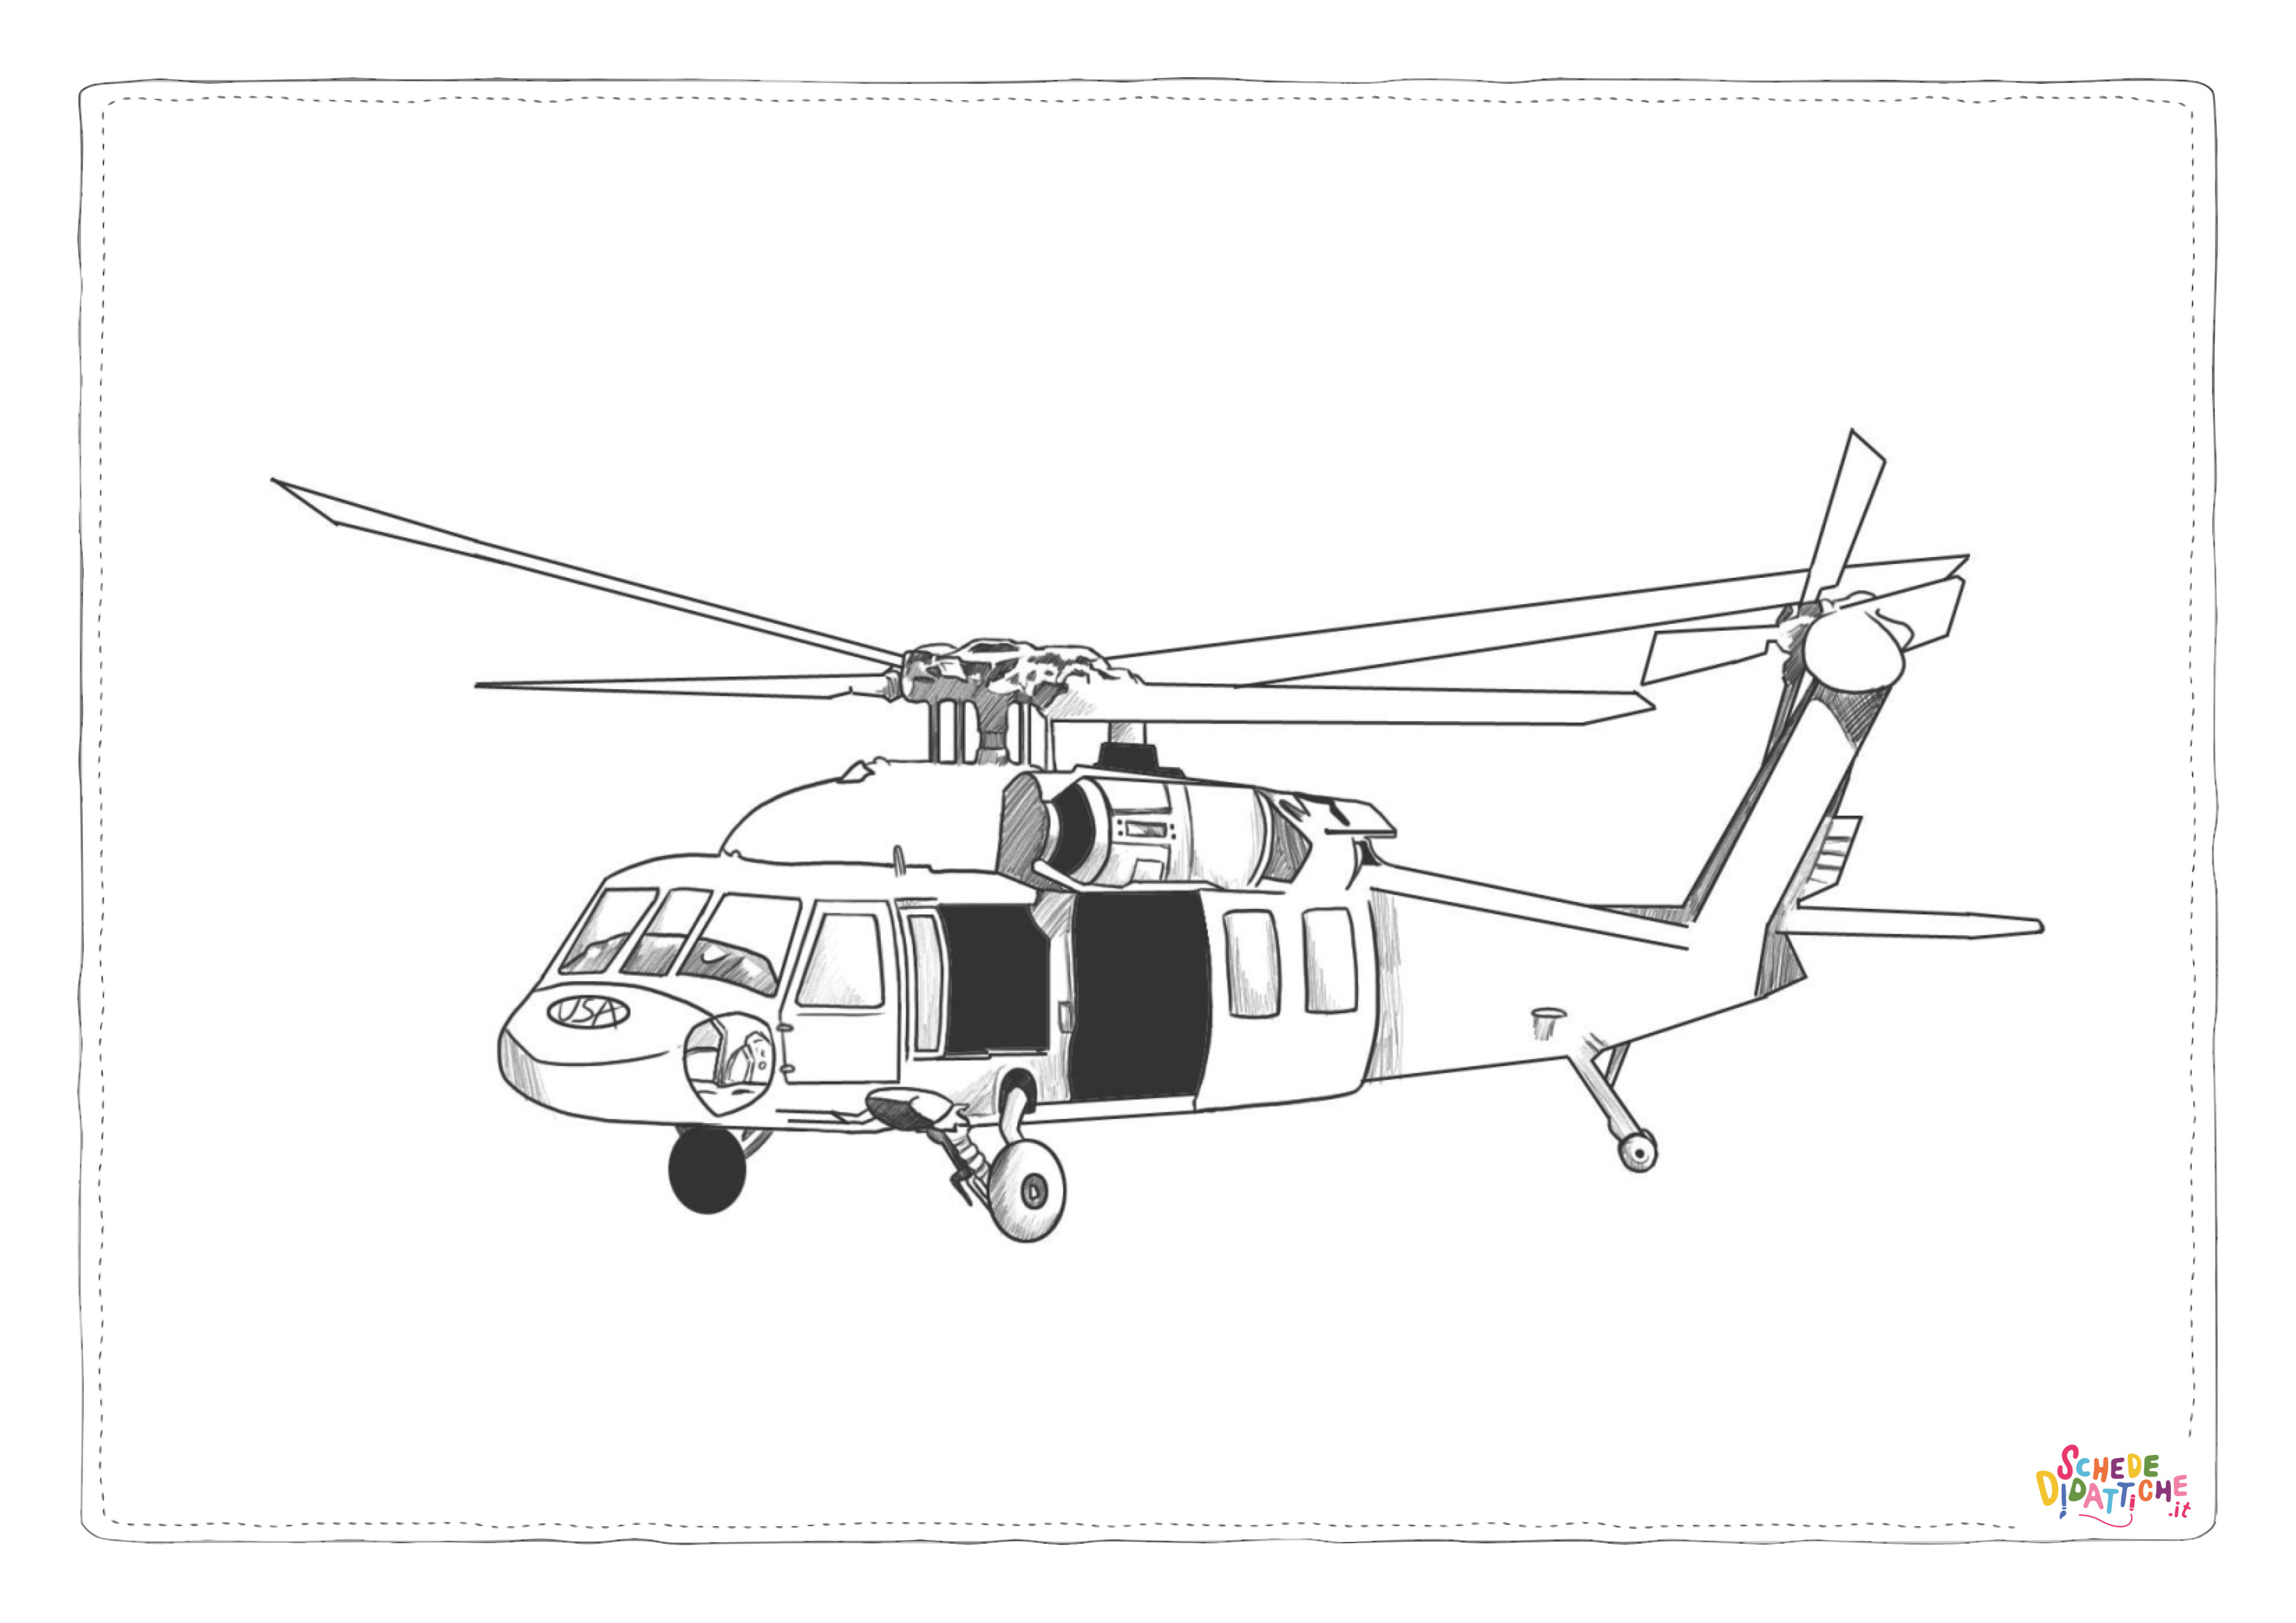 Disegno di elicottero militare da stampare e colorare 1